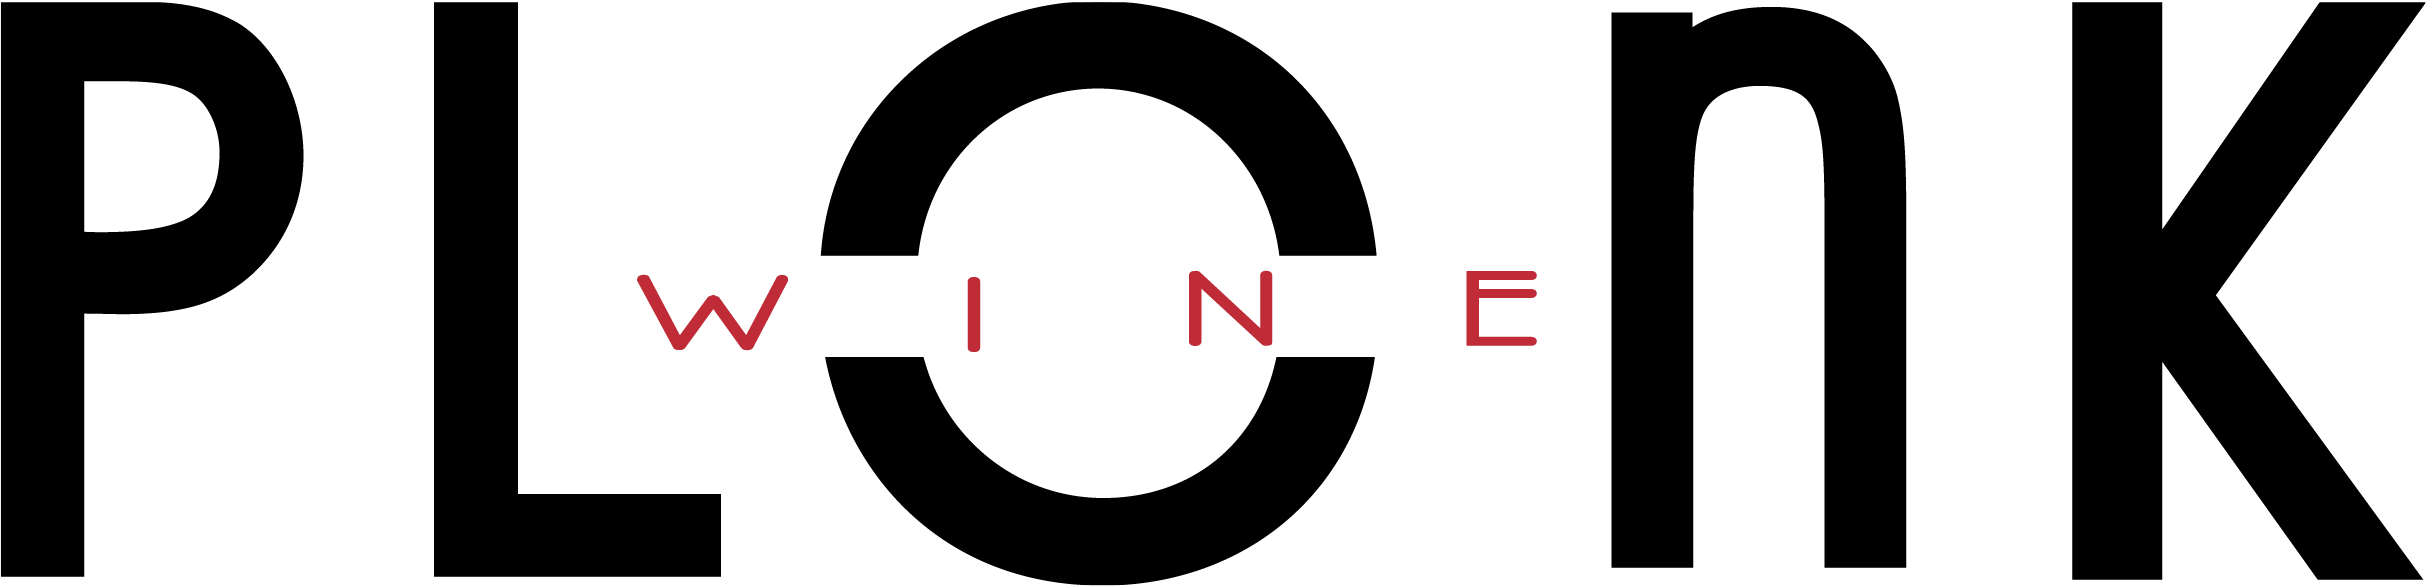 Plonk Logo.png